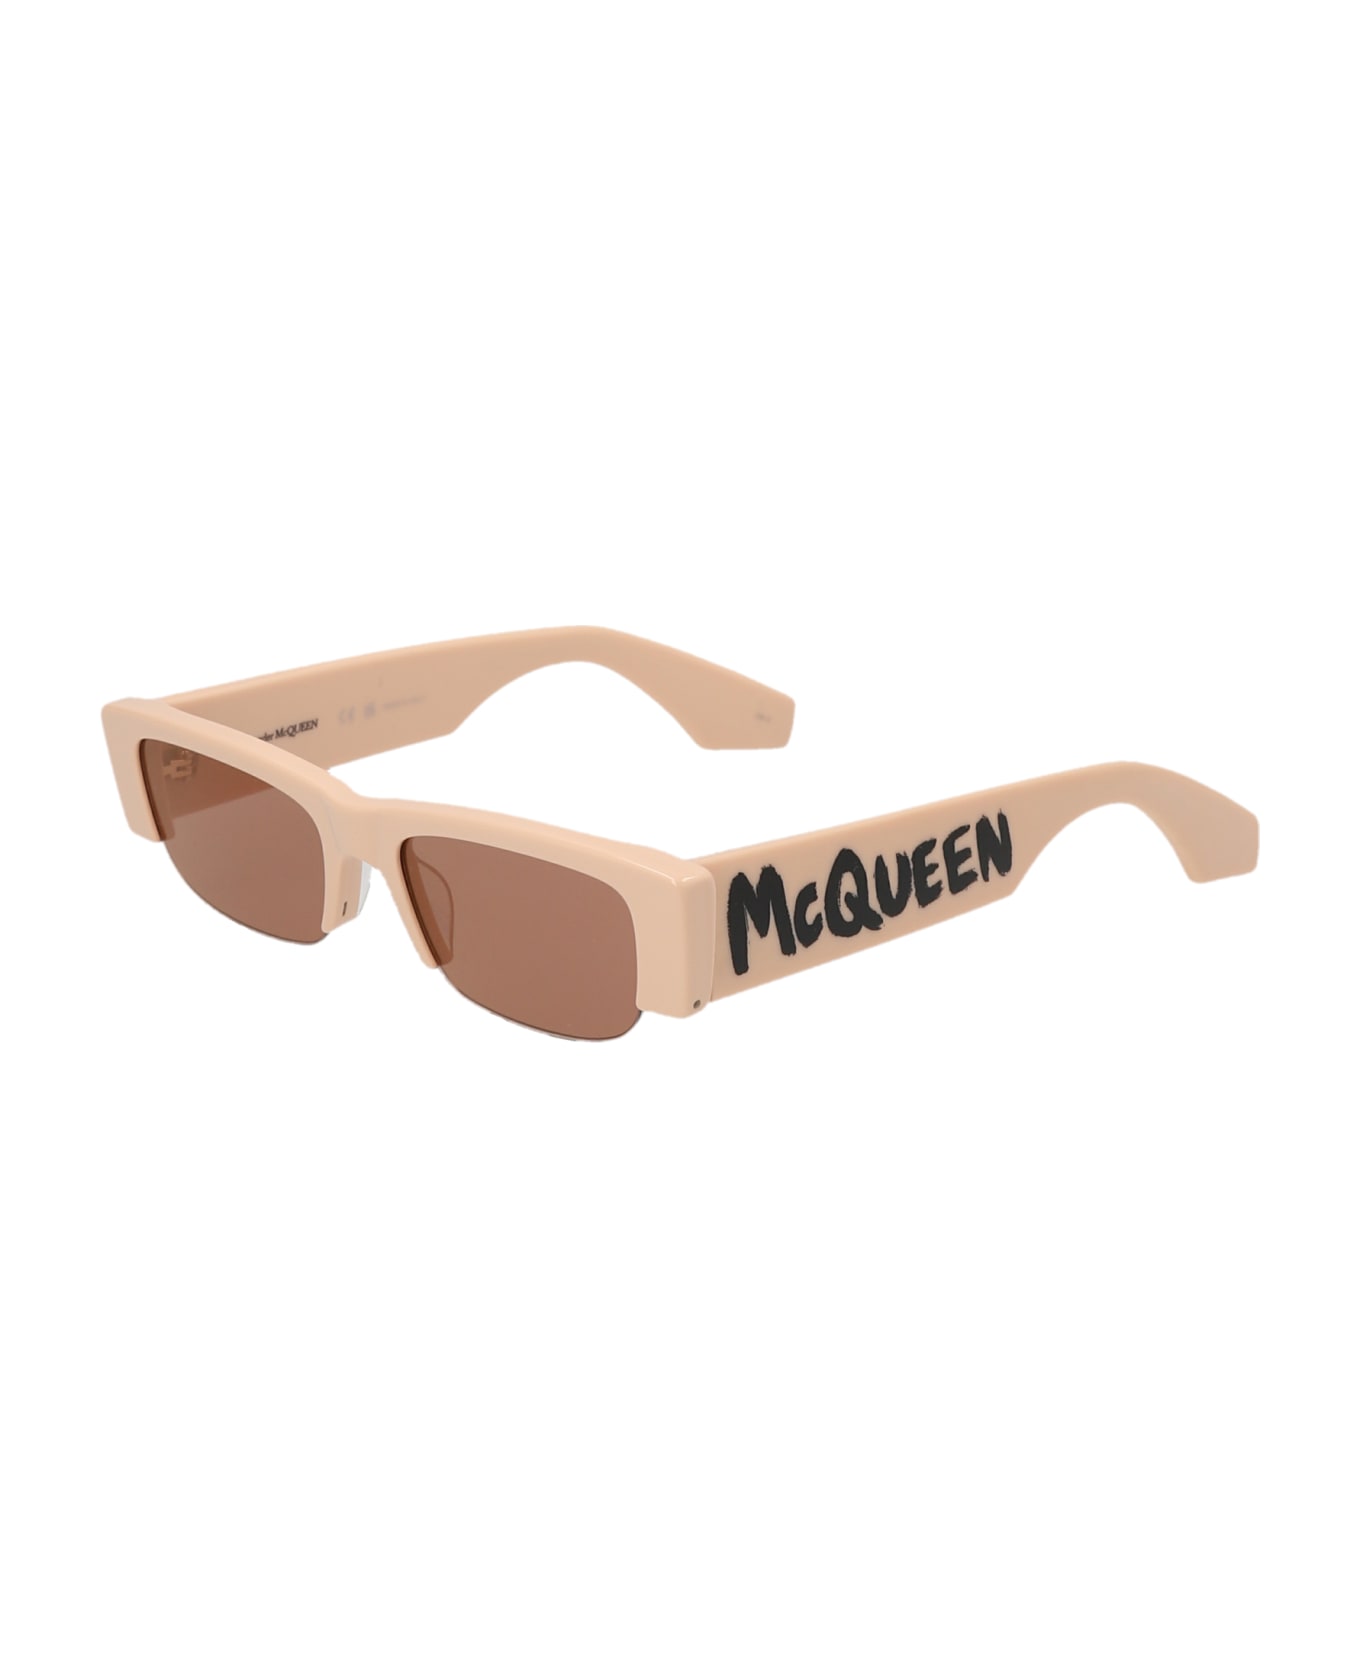 Alexander McQueen 'mcqueen Graffiti' Sunglasses - Pink